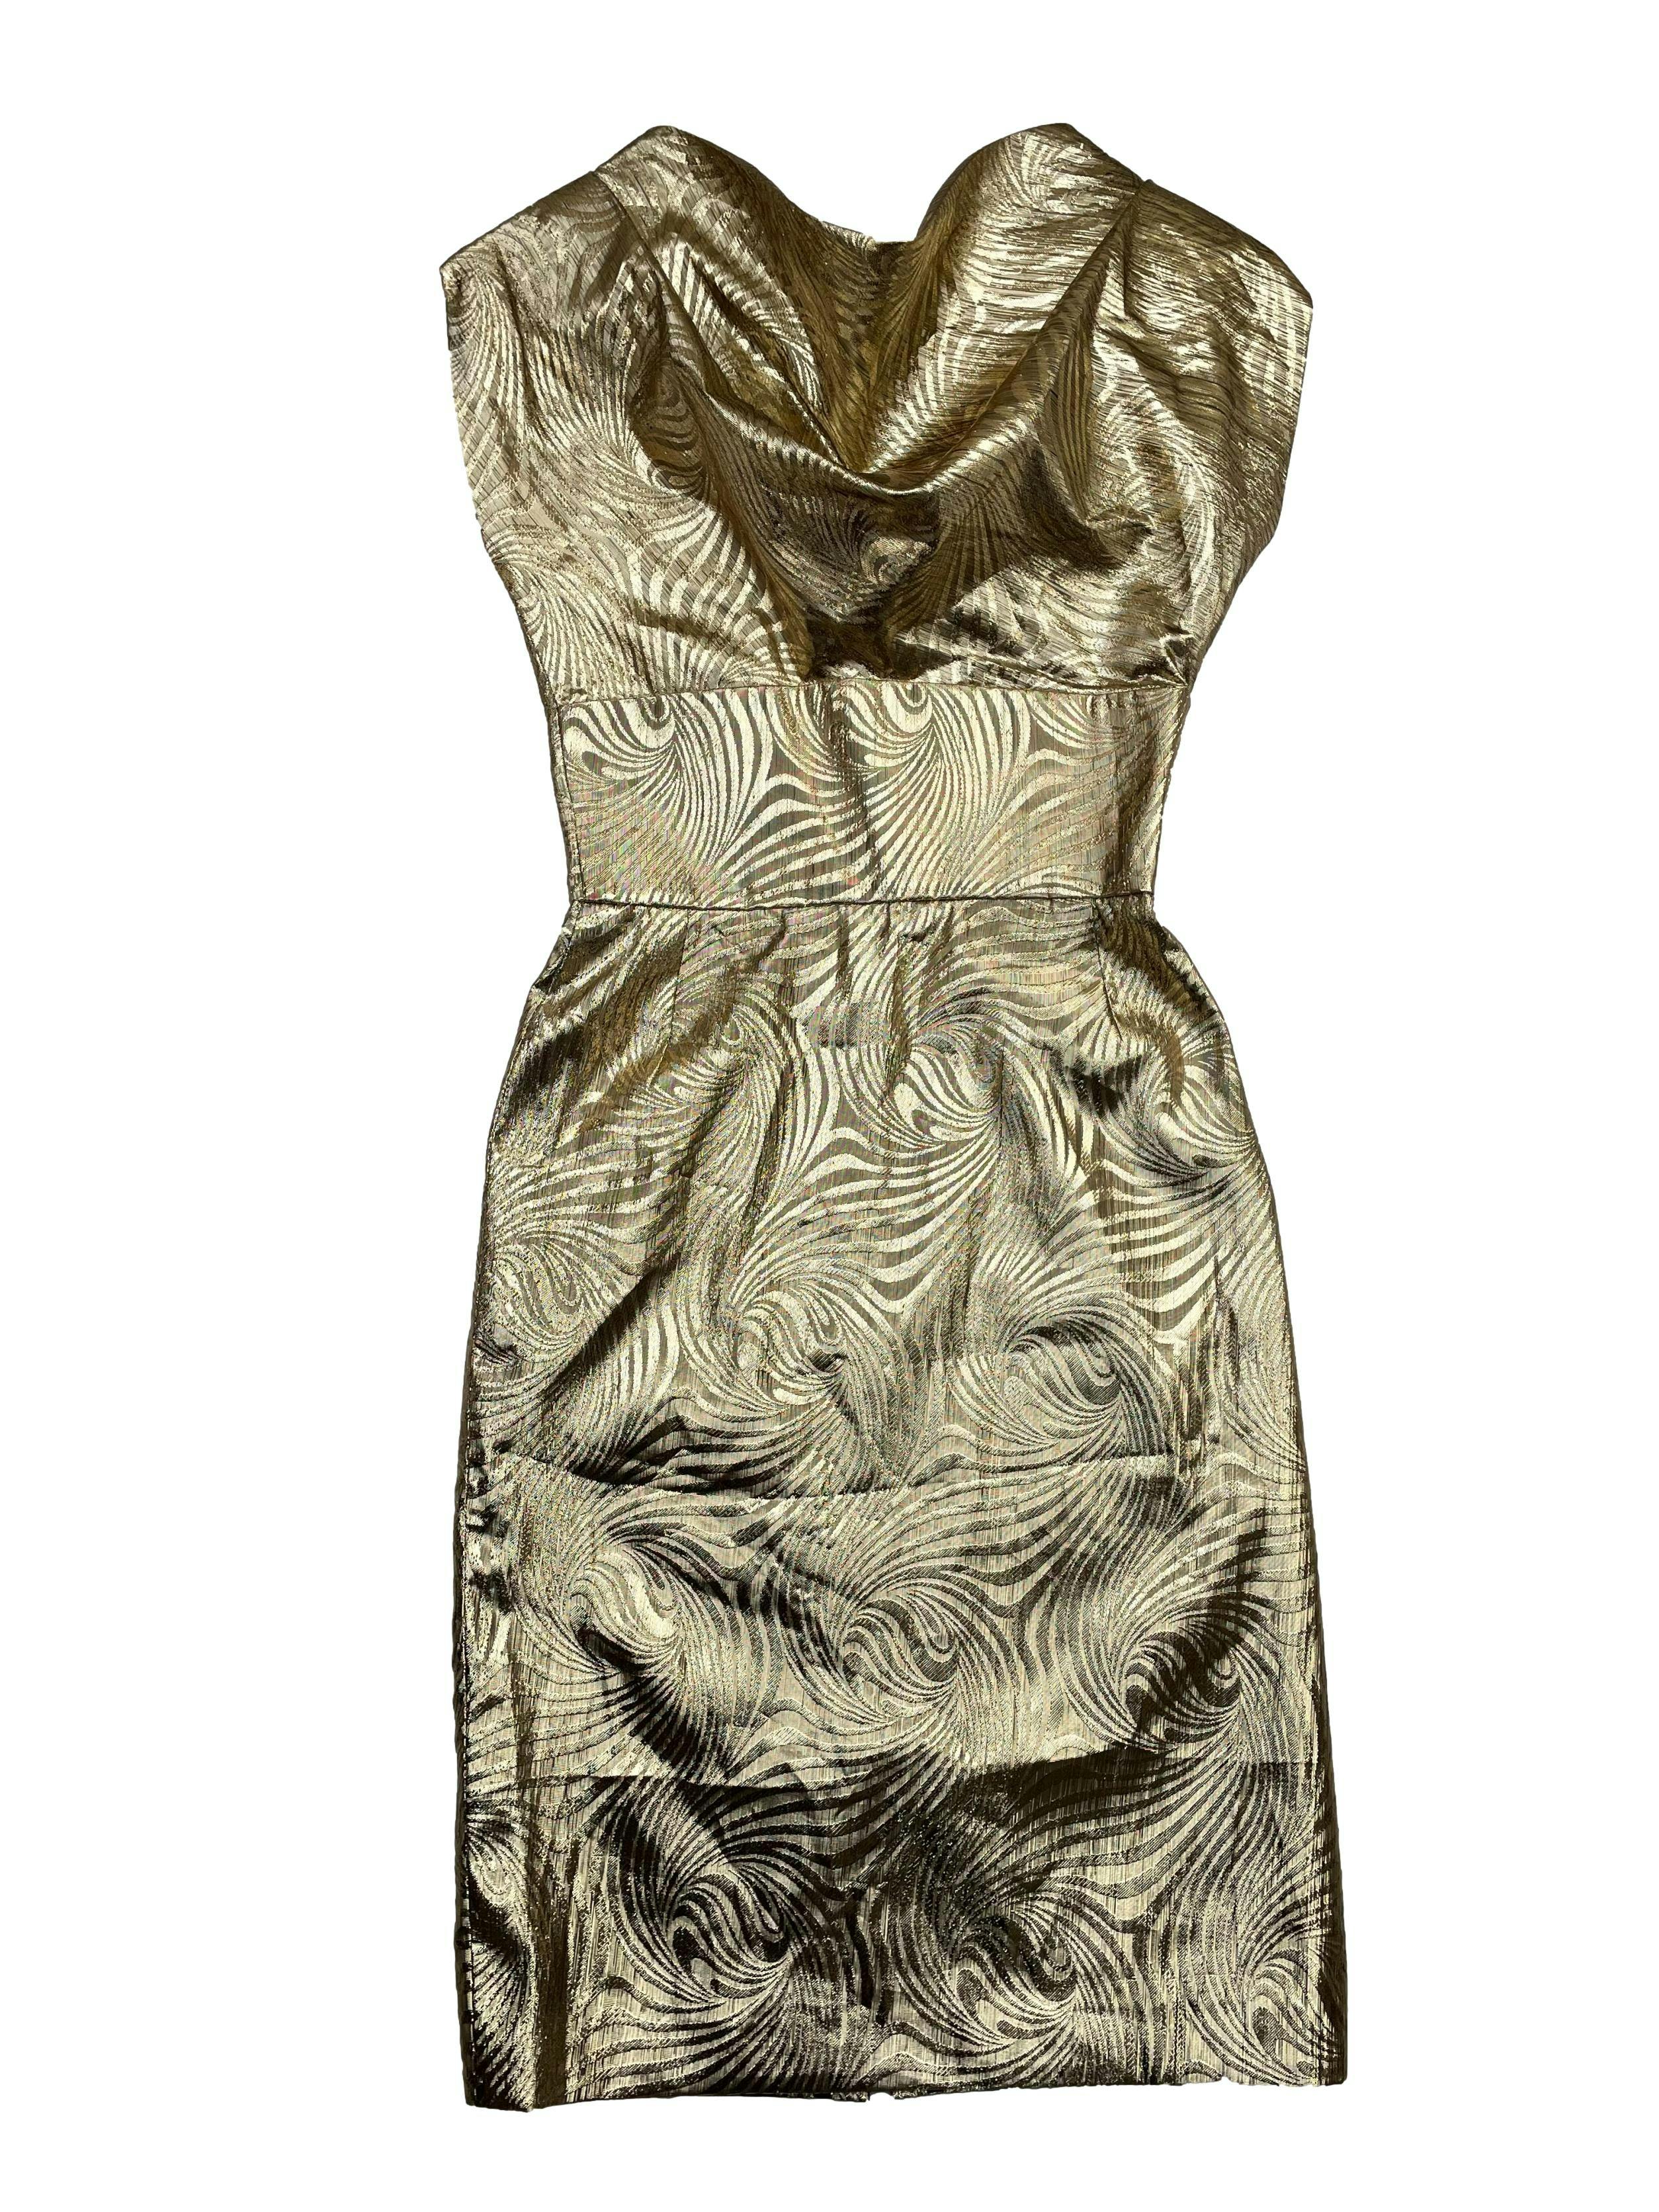 Vestido vintage dorado con forro , hombreras, cuello caído, corte en cintura y cierre posterior. Busto 90cm, Largo 105cm.